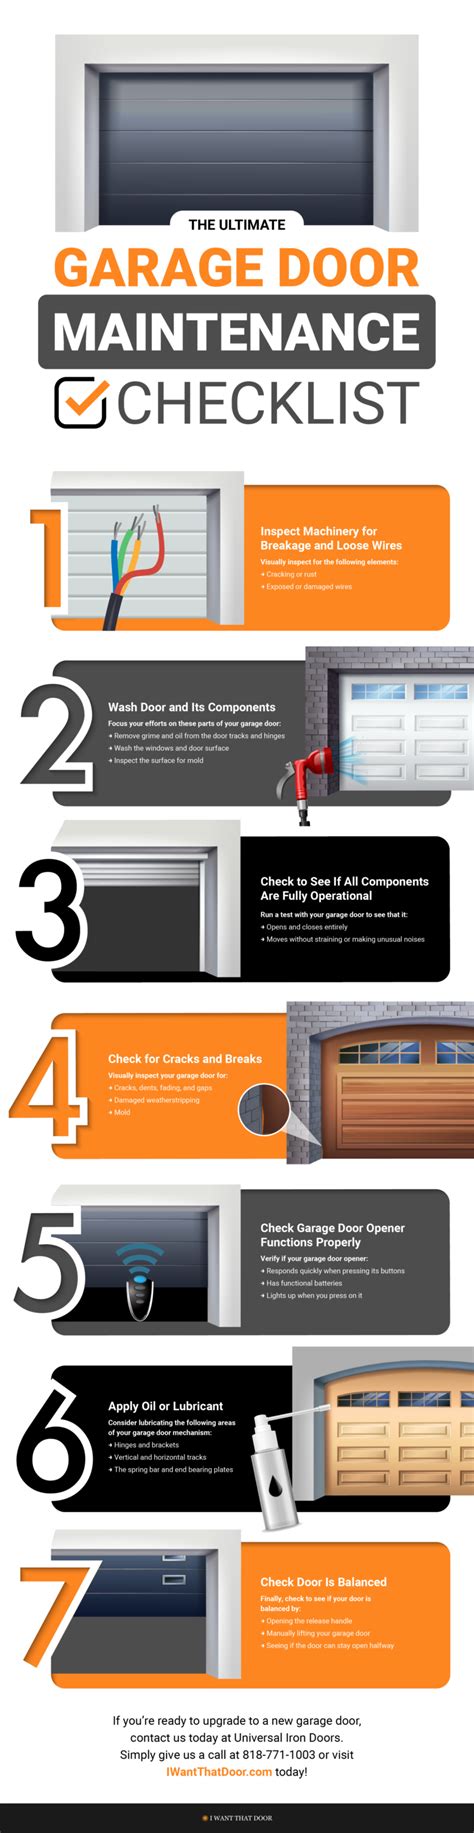 The Ultimate Garage Door Maintenance Checklist Universal Iron Doors